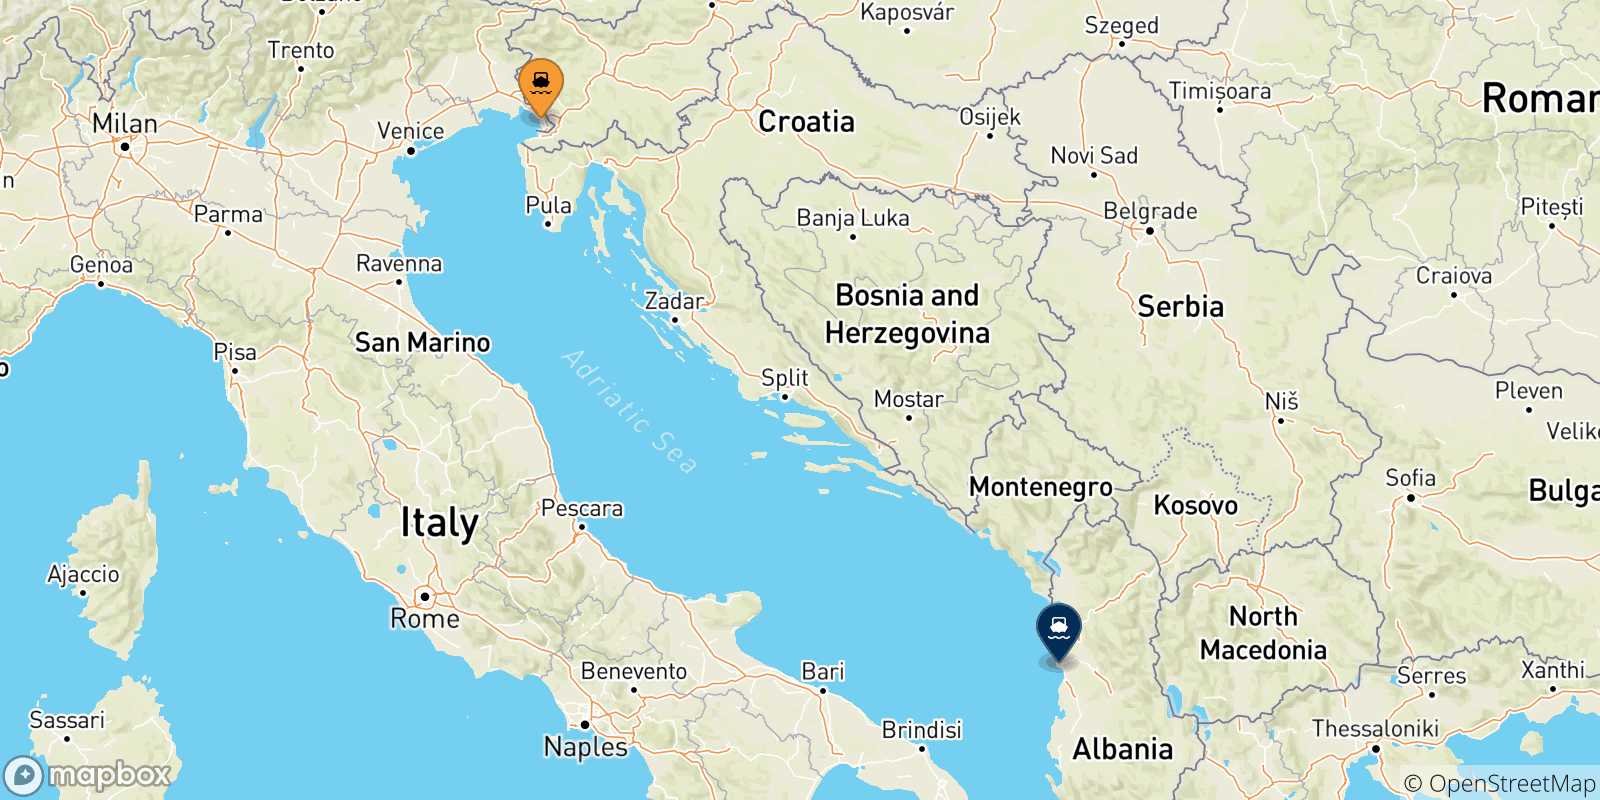 Mappa delle possibili rotte tra Trieste e l'Albania